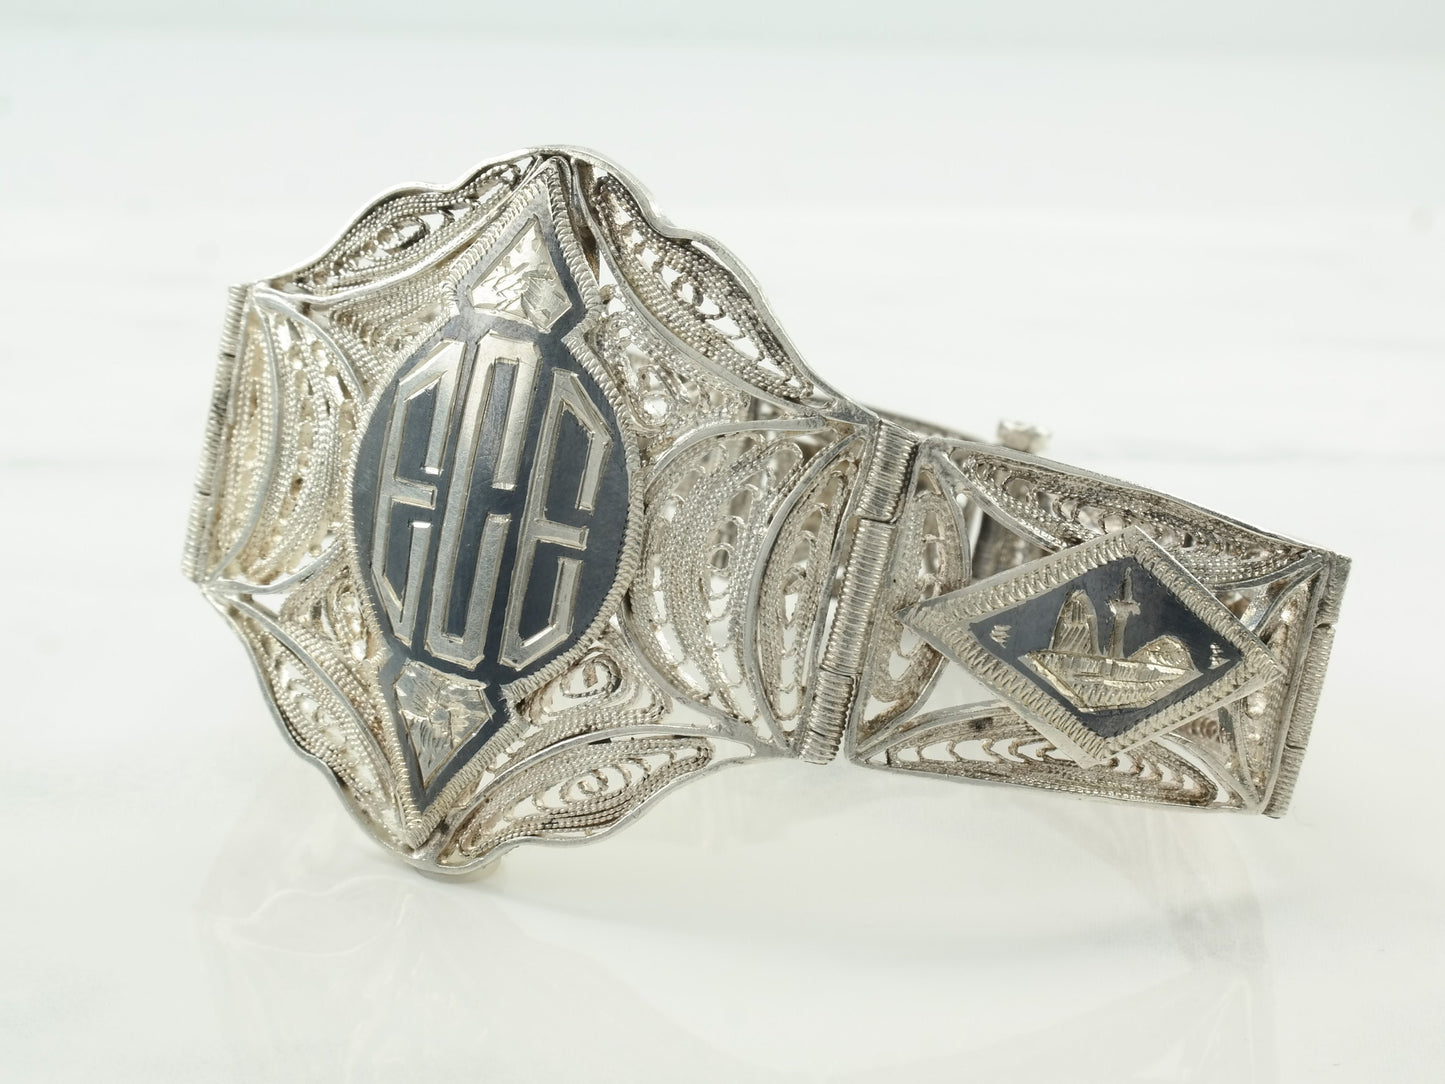 1943 Egyptian Sterling Silver Filigree Panel Bracelet Scenic